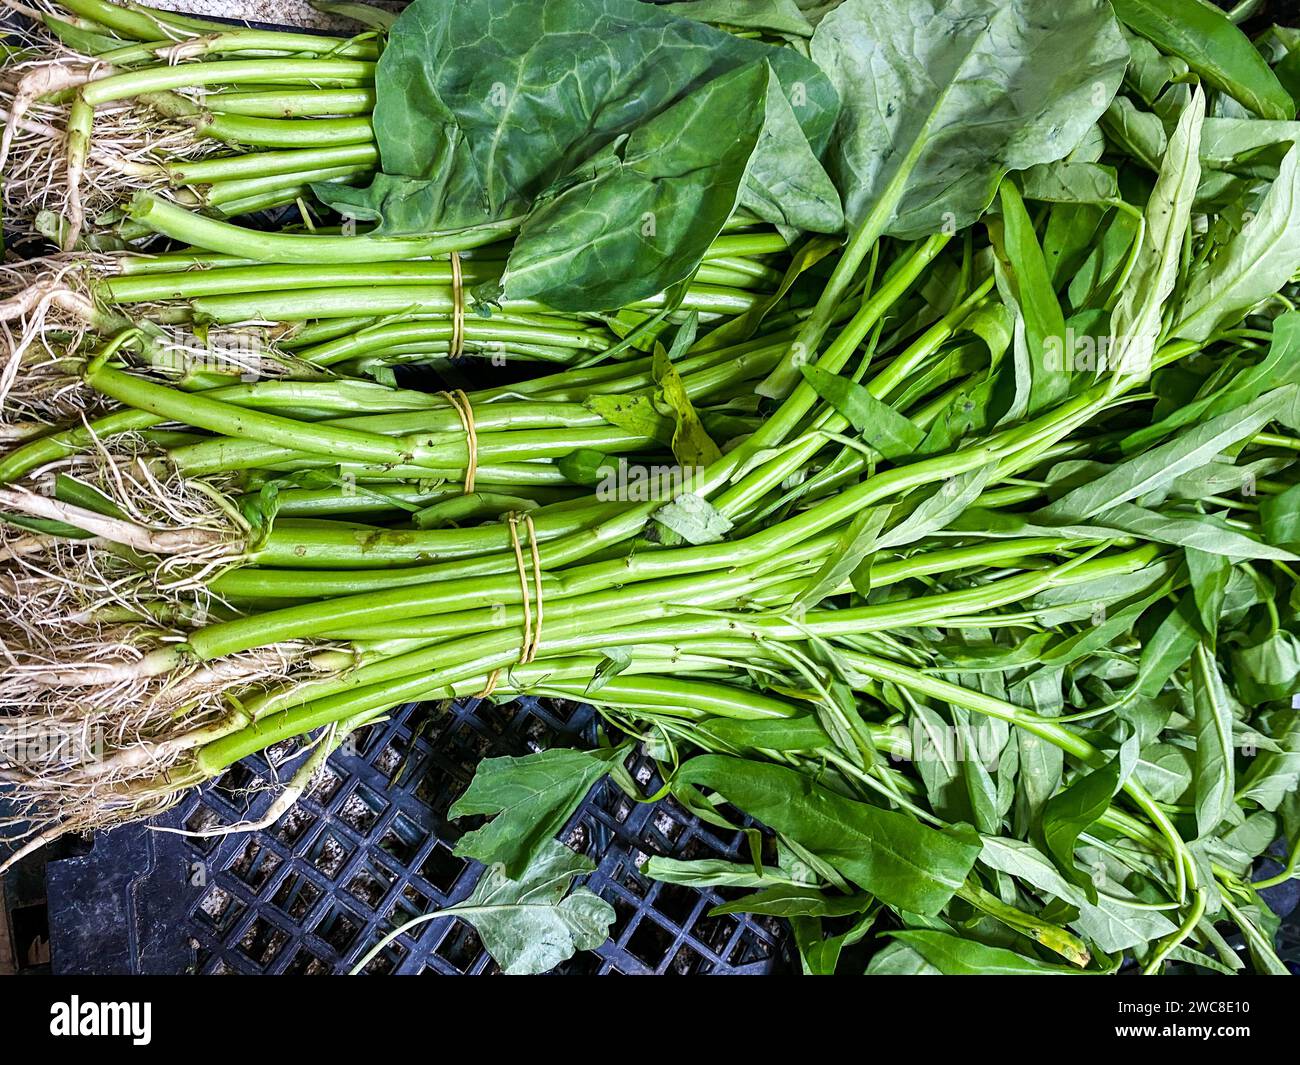 Haufen Wasser Spinat Hintergrund. Verkauf auf Frischmarkt. Stockfoto